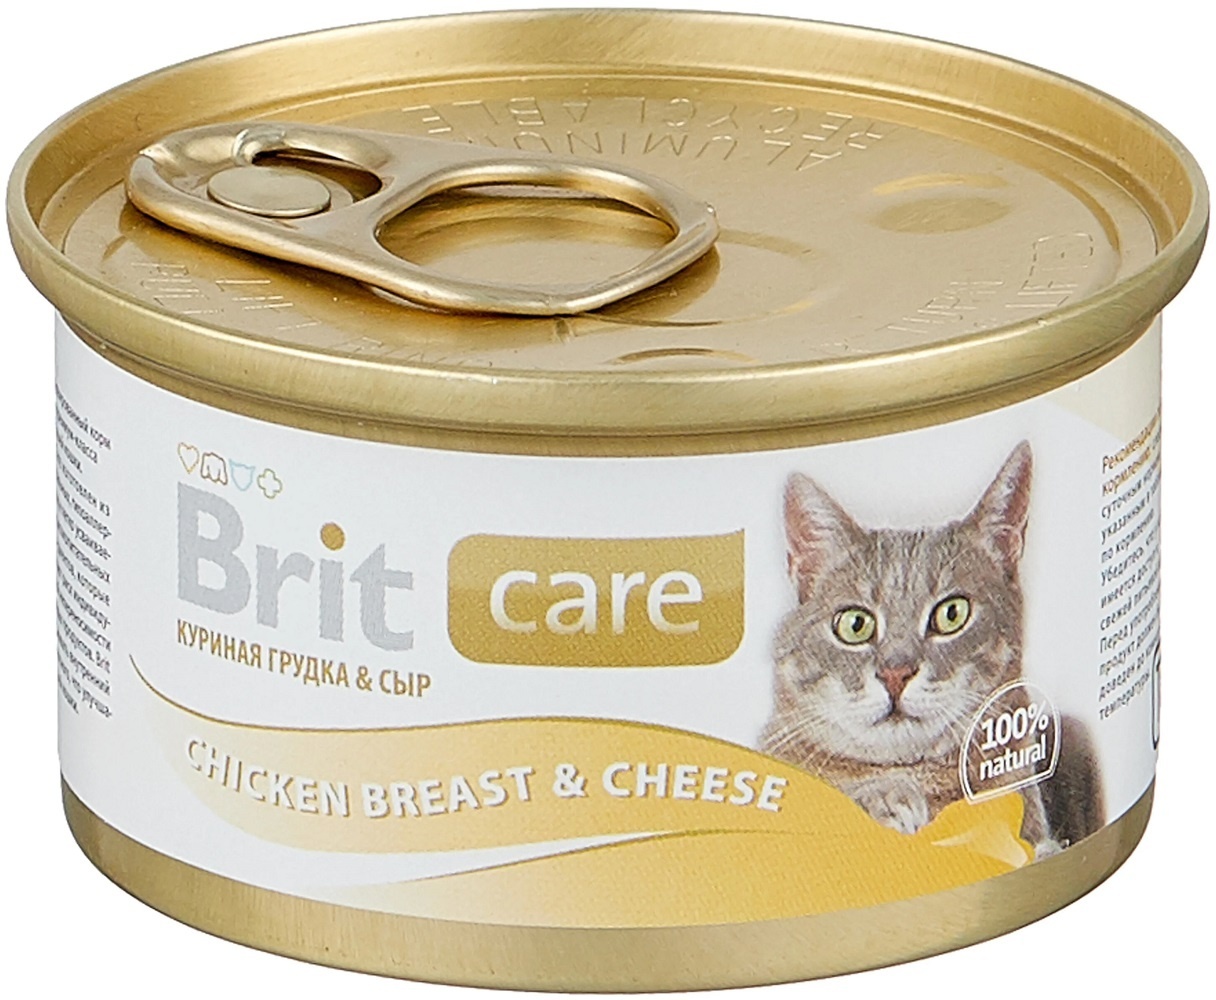 Brit Brit консервы для кошек, с куриной грудкой и сыром (80 г) корм для кошек brit care куриная грудка с сыром конс 80г